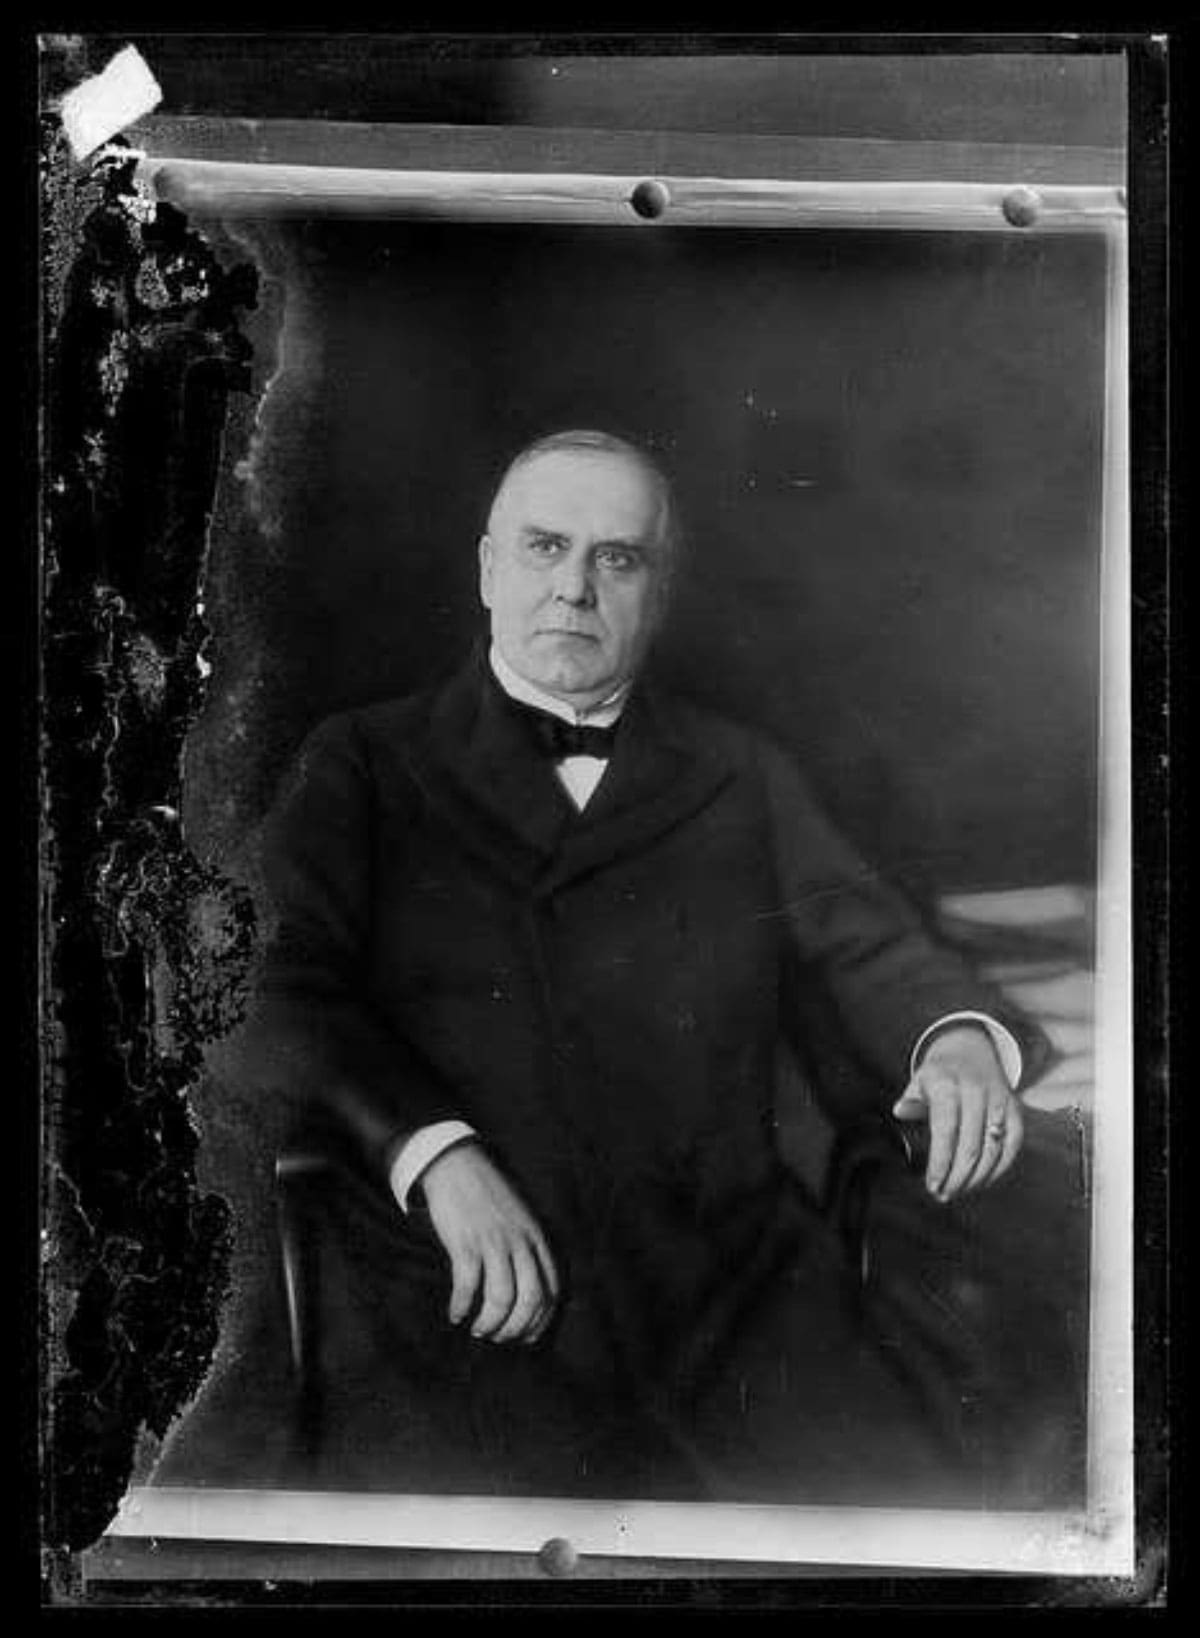 Studio portrait of William McKinley.